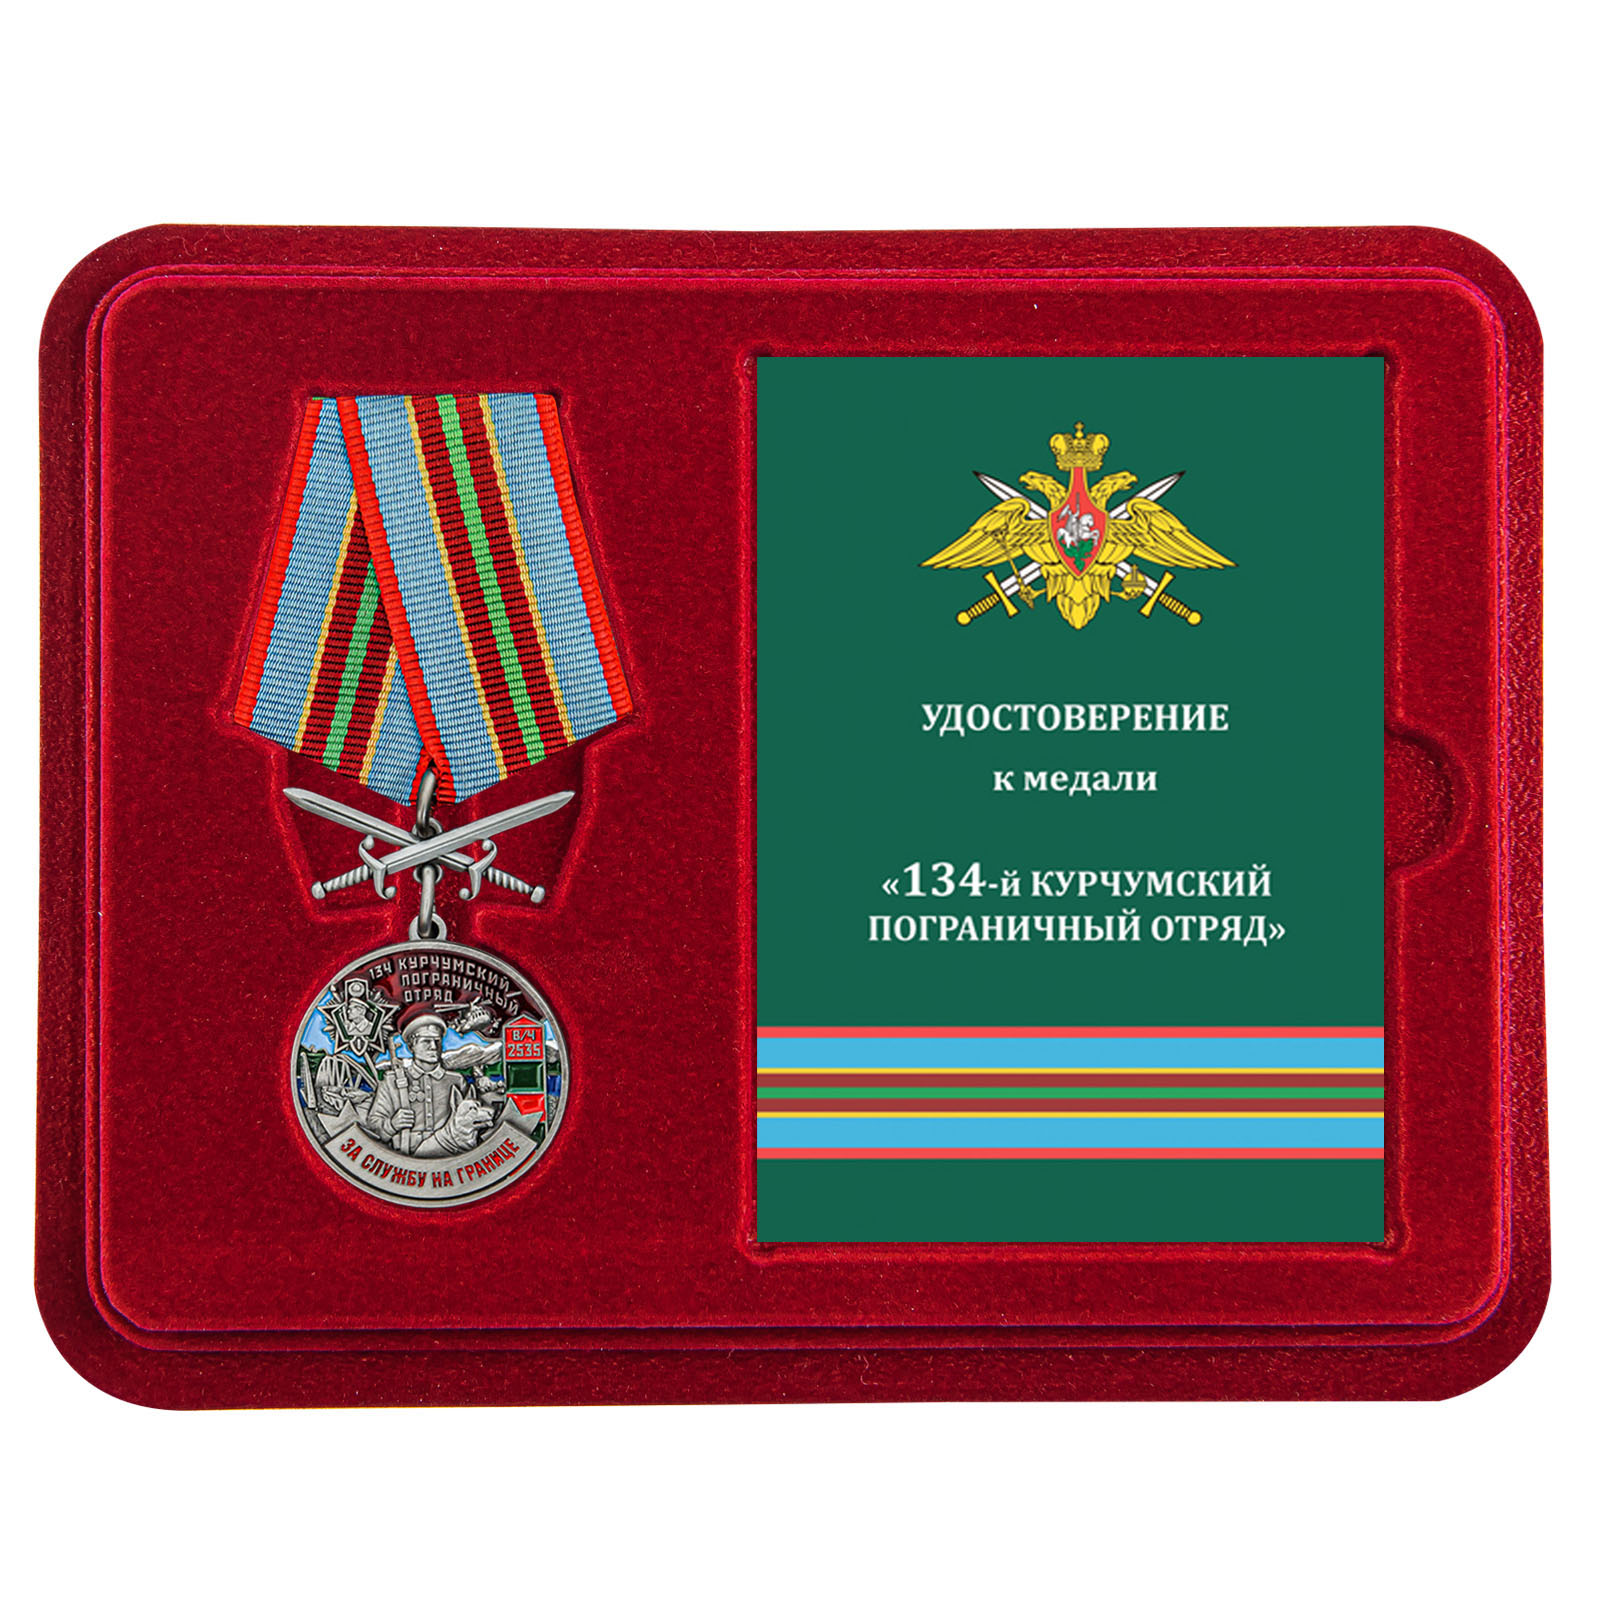 Купить медаль За службу в Курчумском пограничном отряде с доставкой